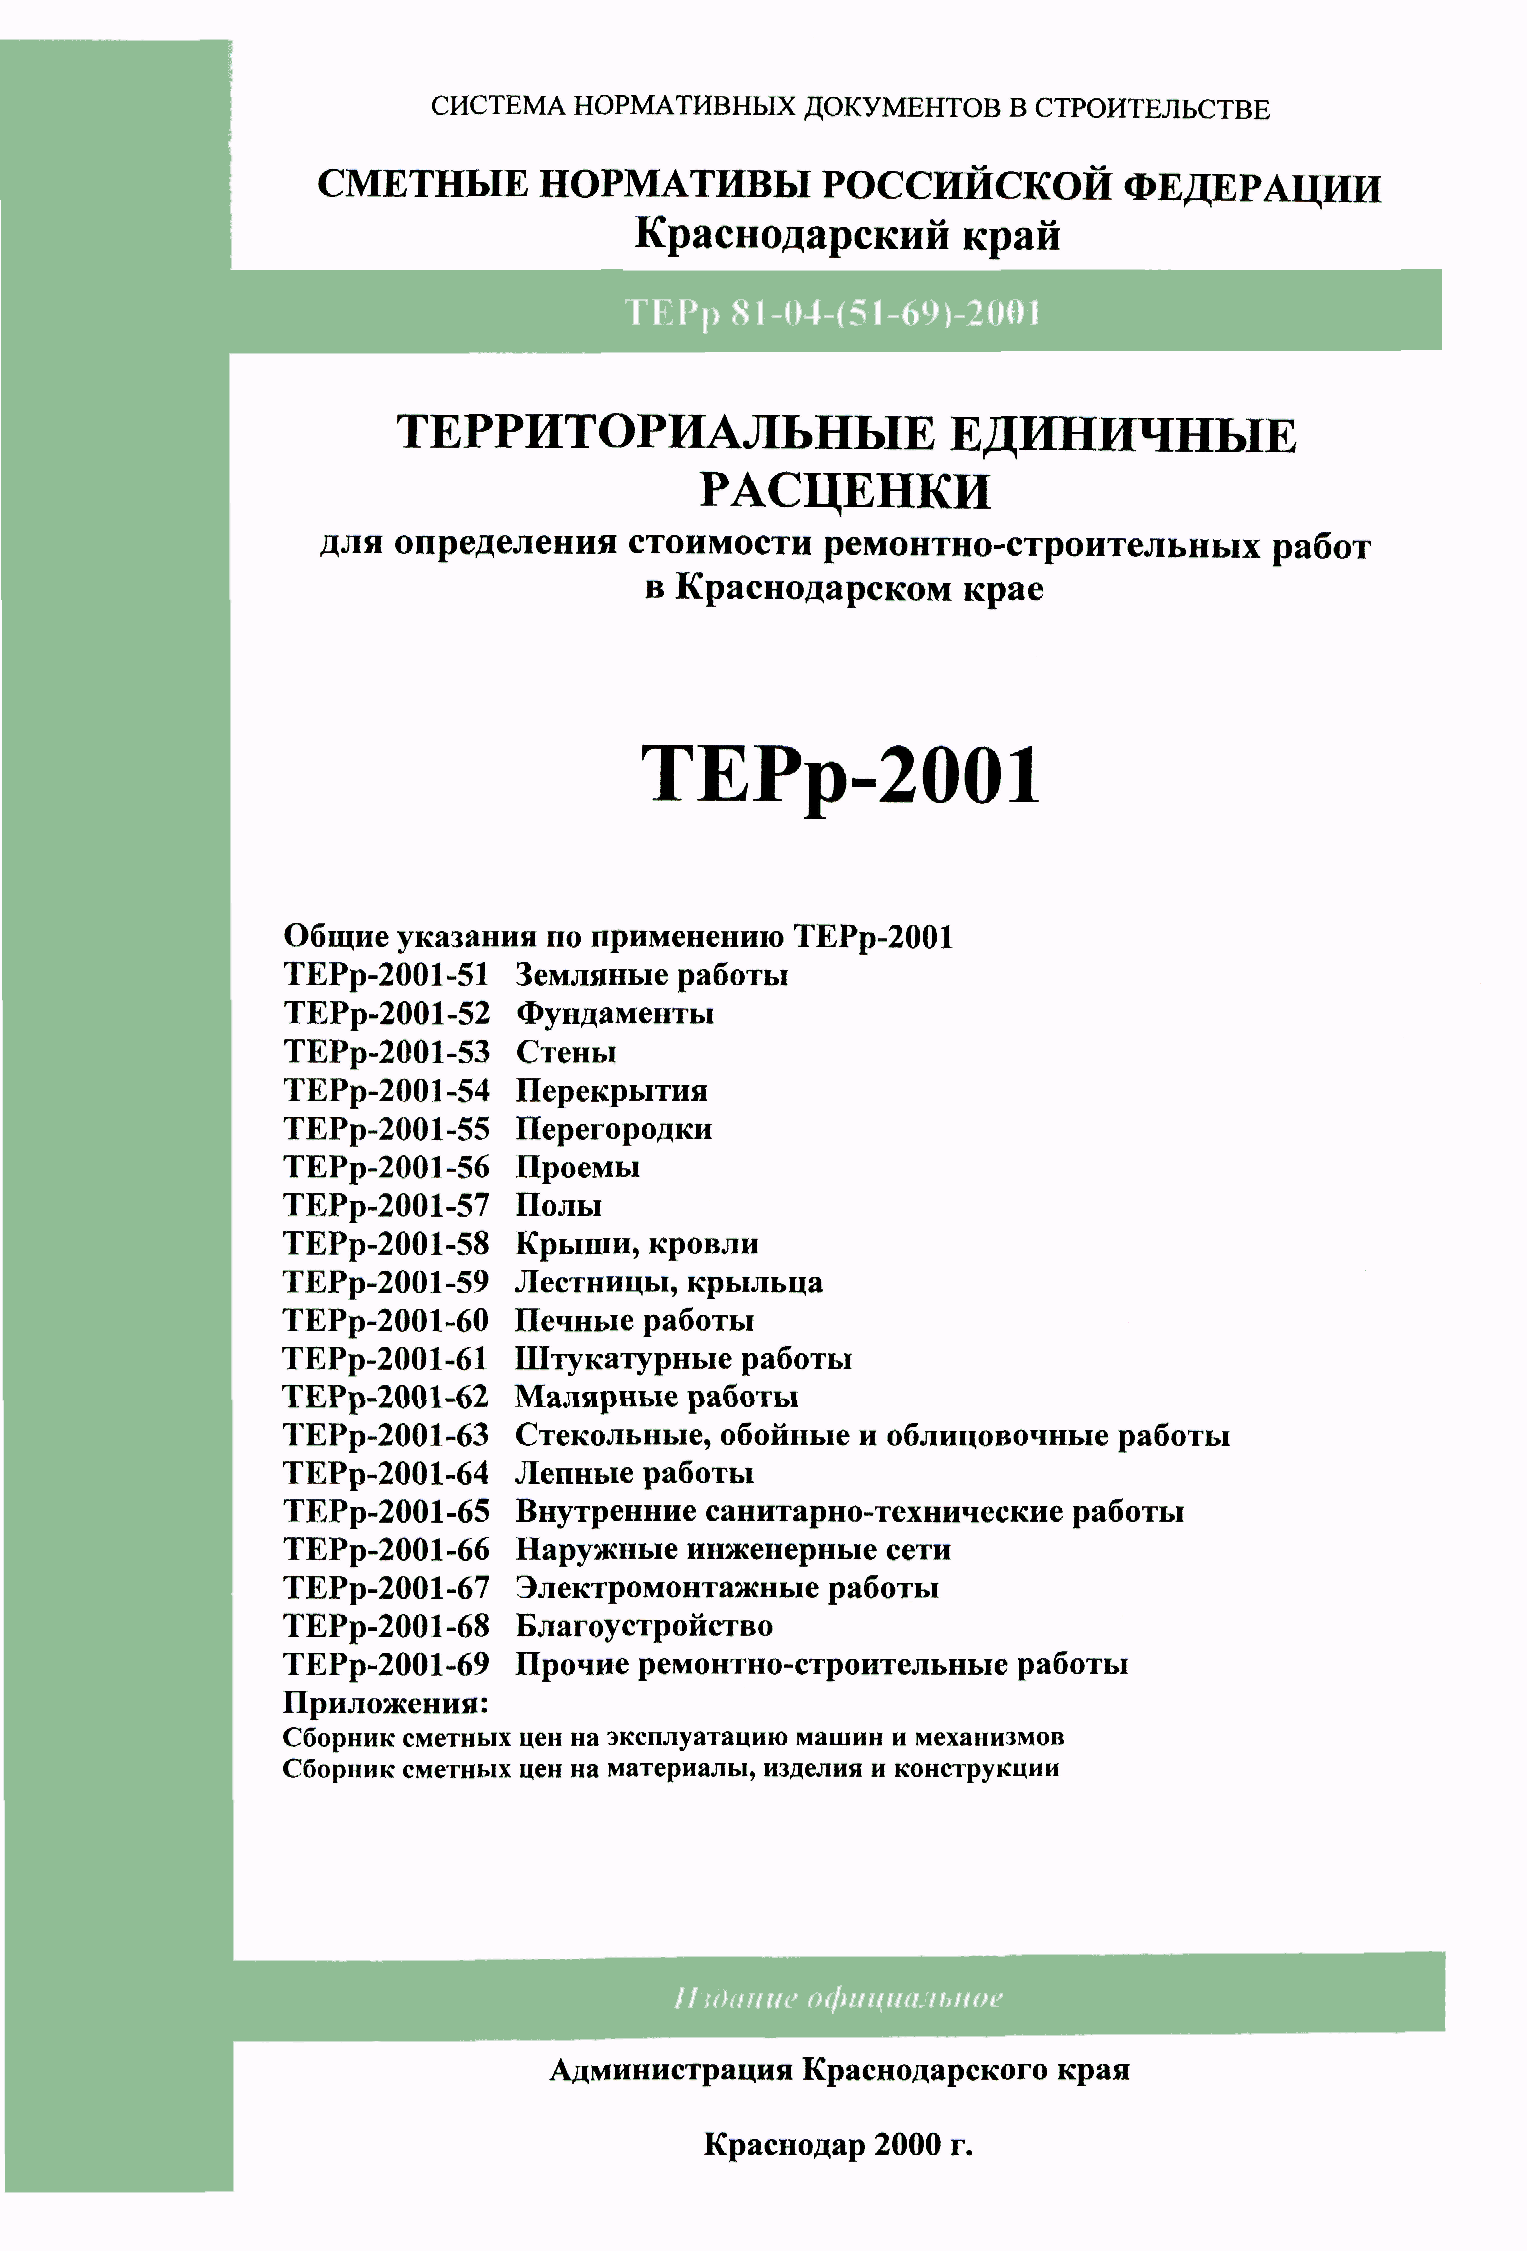 ТЕРр Краснодарского края 2001-57